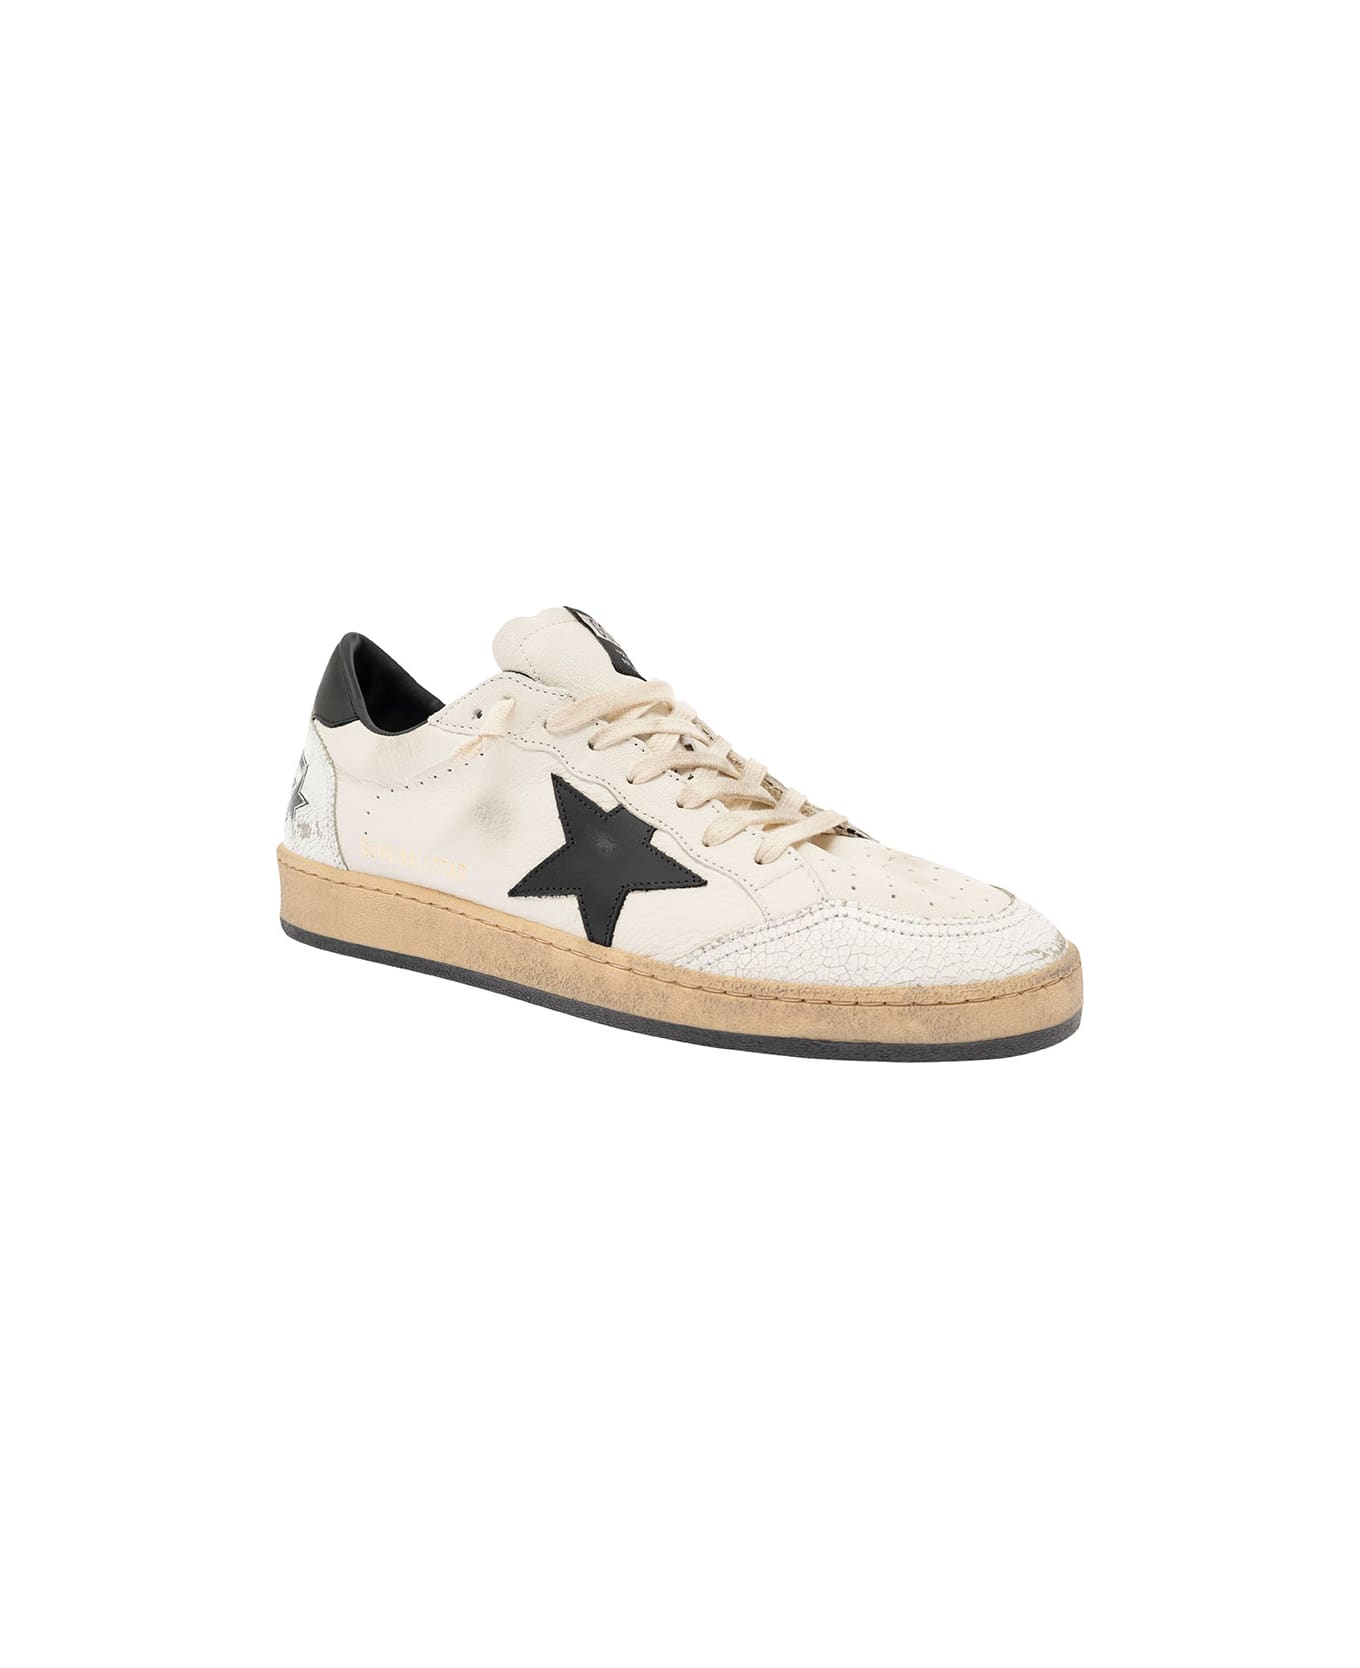 Golden Goose Ball Star Sneakers - White/Black スニーカー